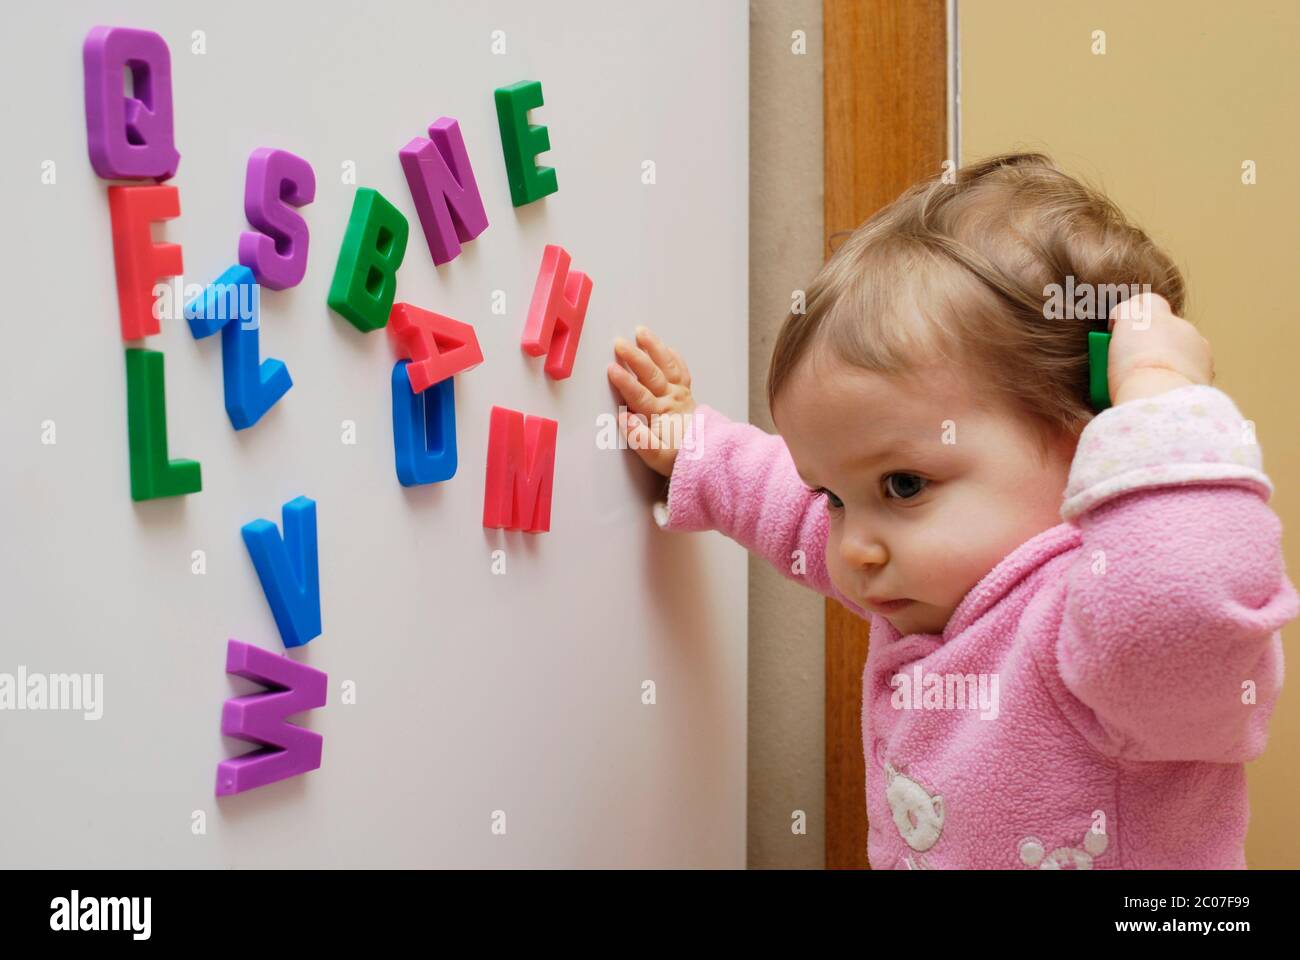 Développement de la petite enfance. Une fille d'un an jouant avec des lettres magnétiques de réfrigérateur. Banque D'Images